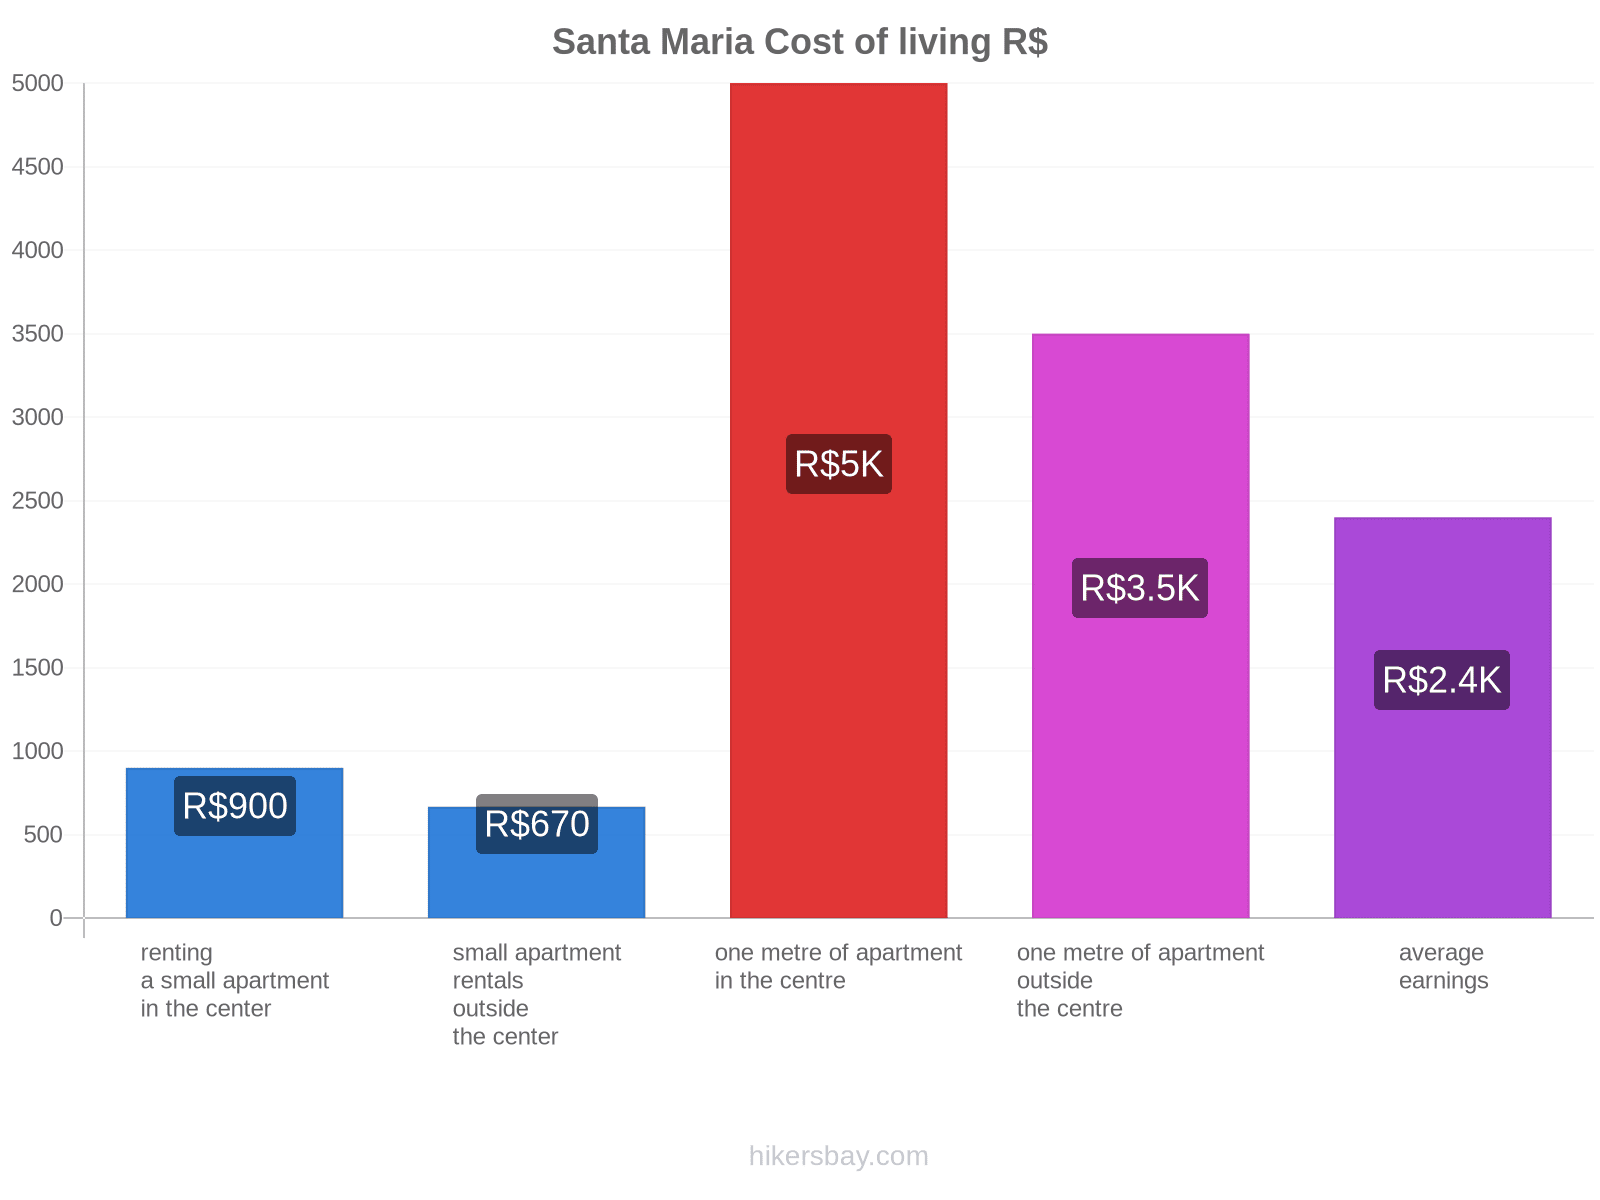 Santa Maria cost of living hikersbay.com